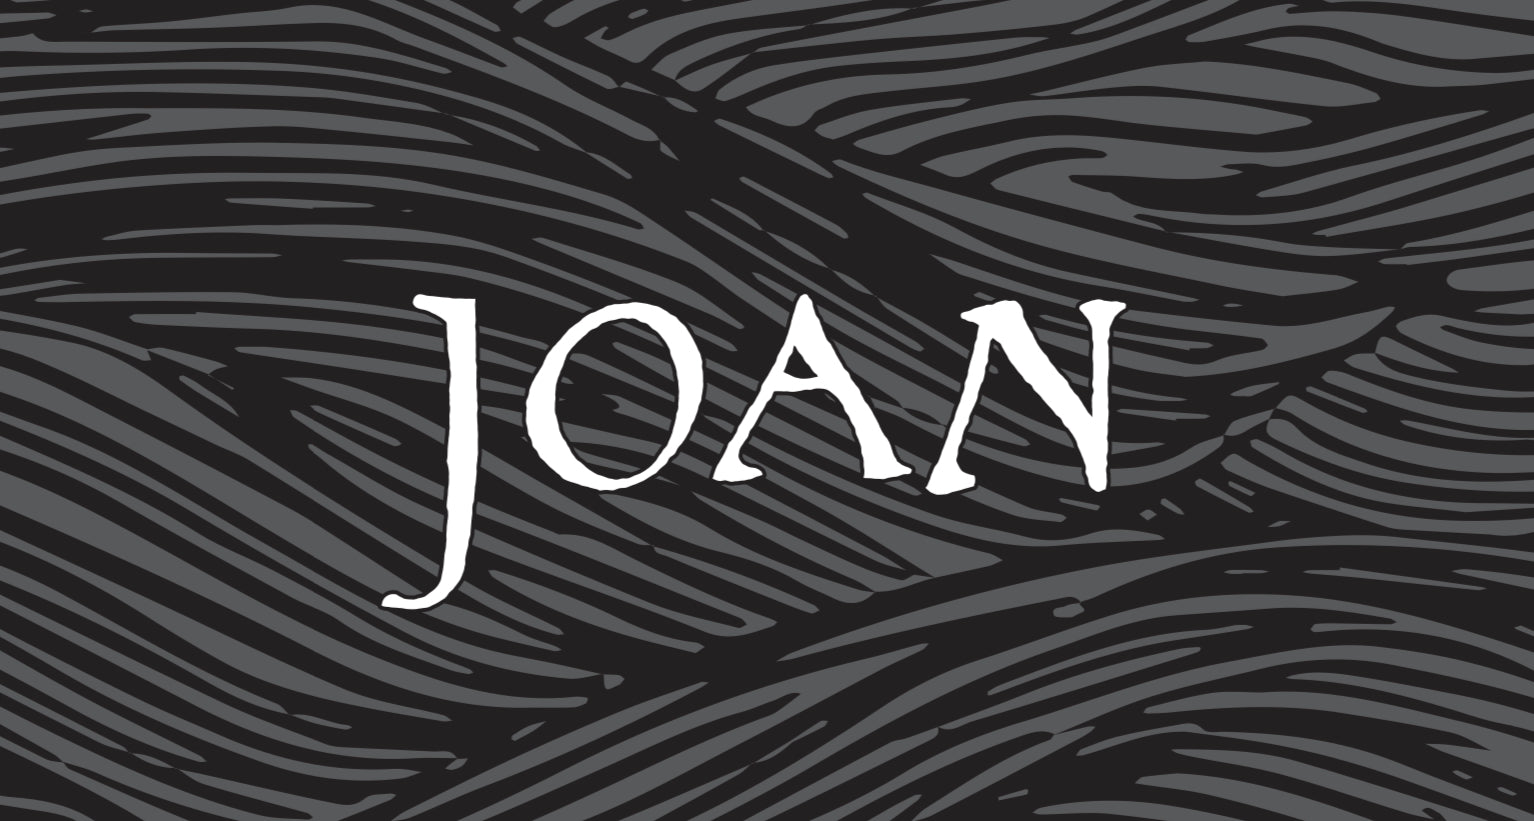 Joan 2021 Sparkling